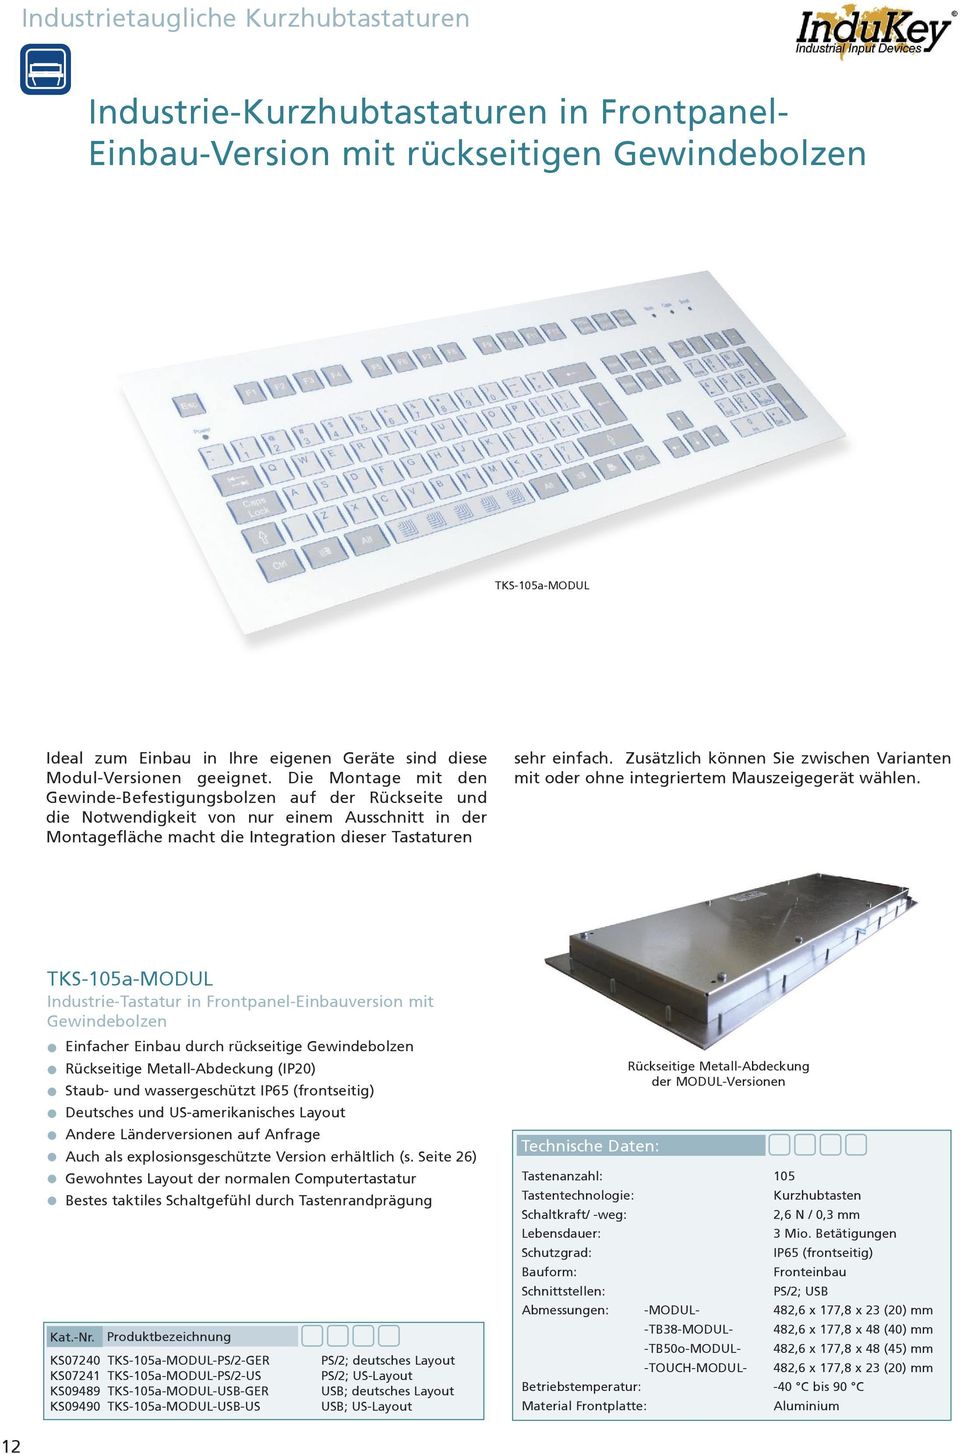 KS07210 InduKey Tastatur TKS-105a-KGEH-PS/2-GER PS/2 IP65 gebraucht 